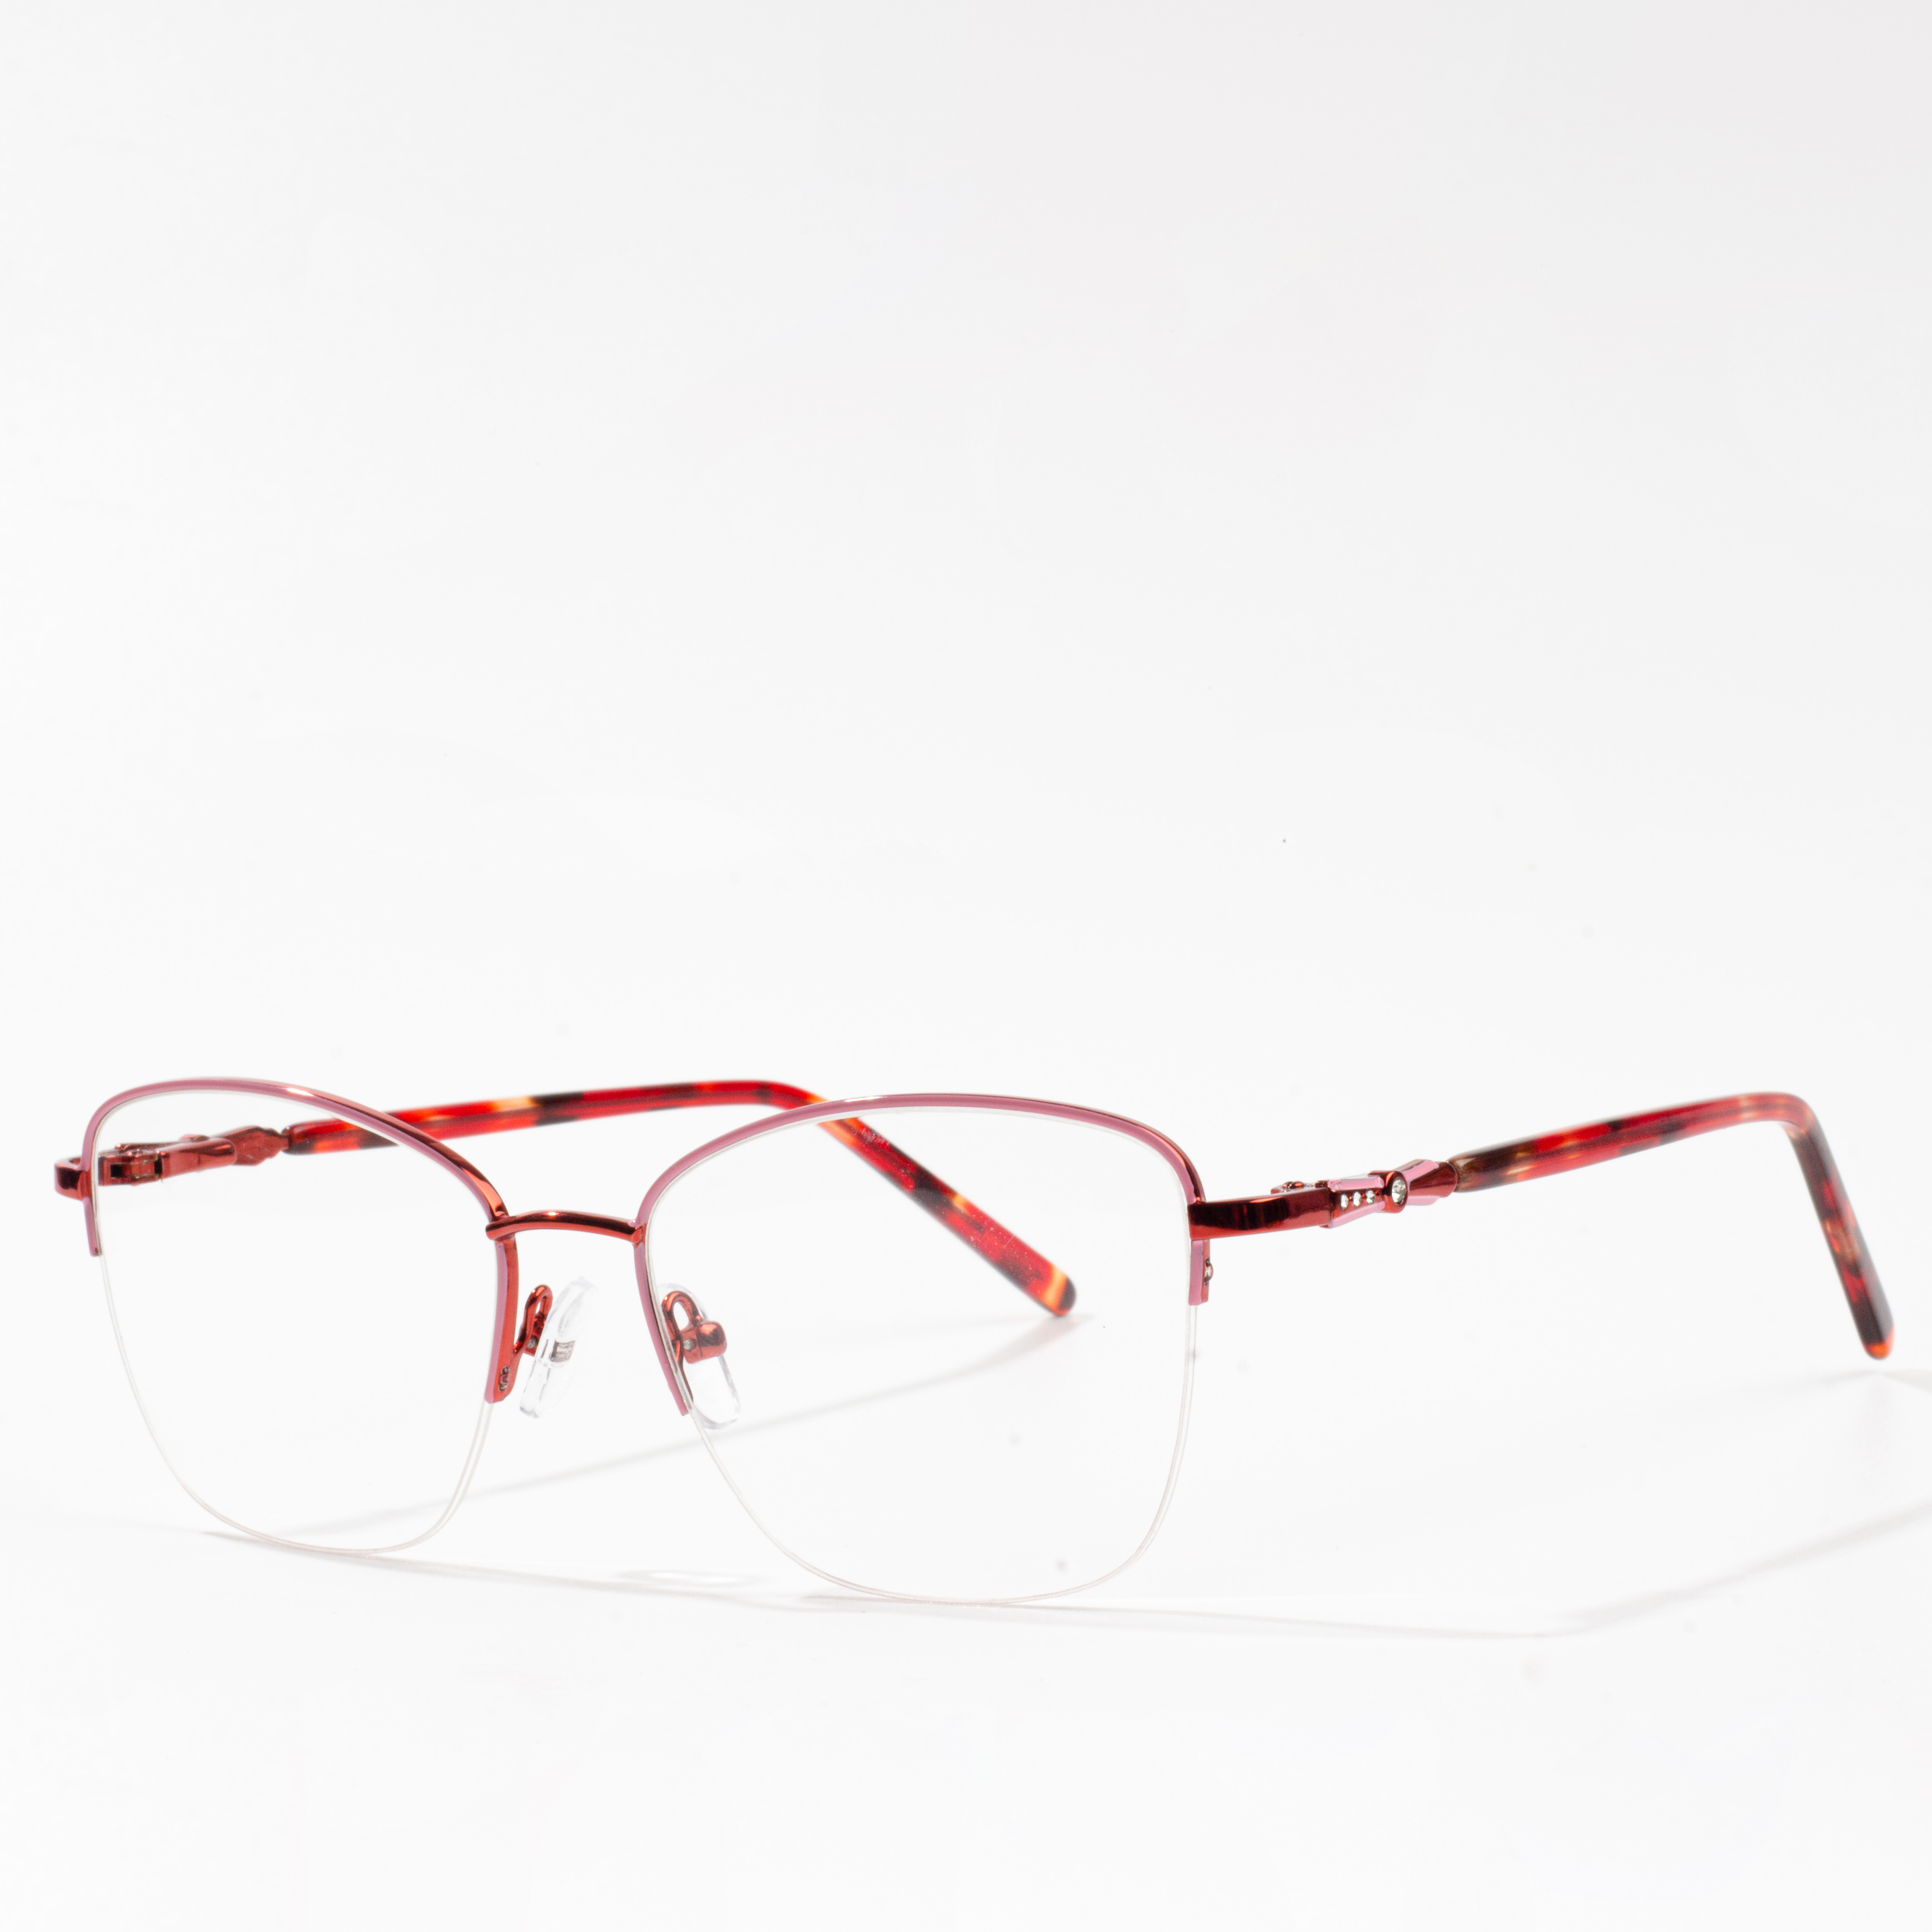 glitzy eyeglass frames